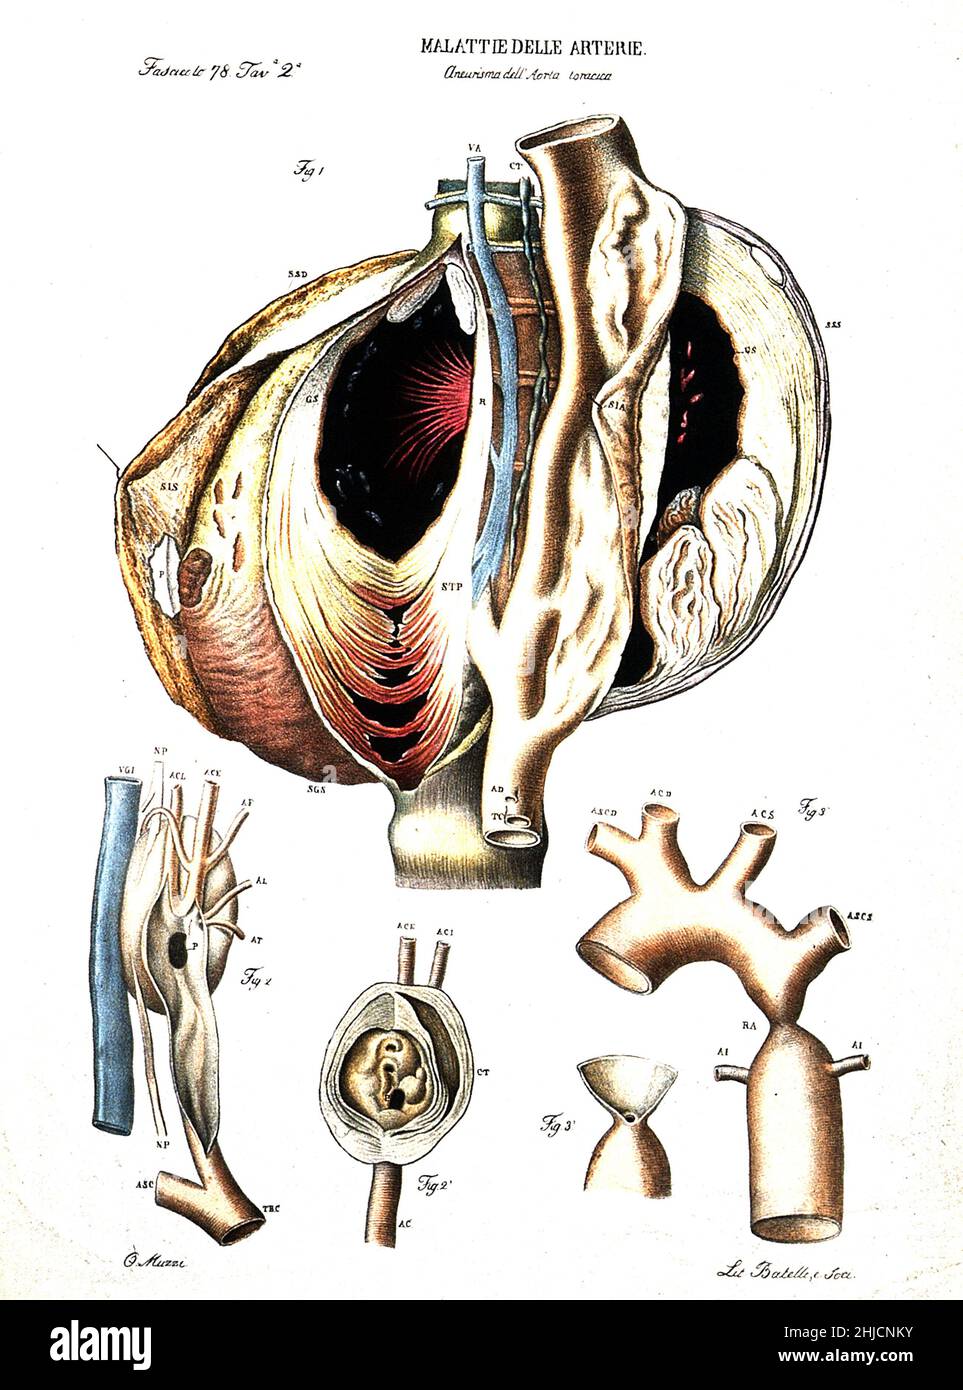 Plusieurs sections d'artère malade (anévrisme de l'aorte).Lithographie colorée de Batelli d'après Ottavio Muzzi, c.1843. Banque D'Images